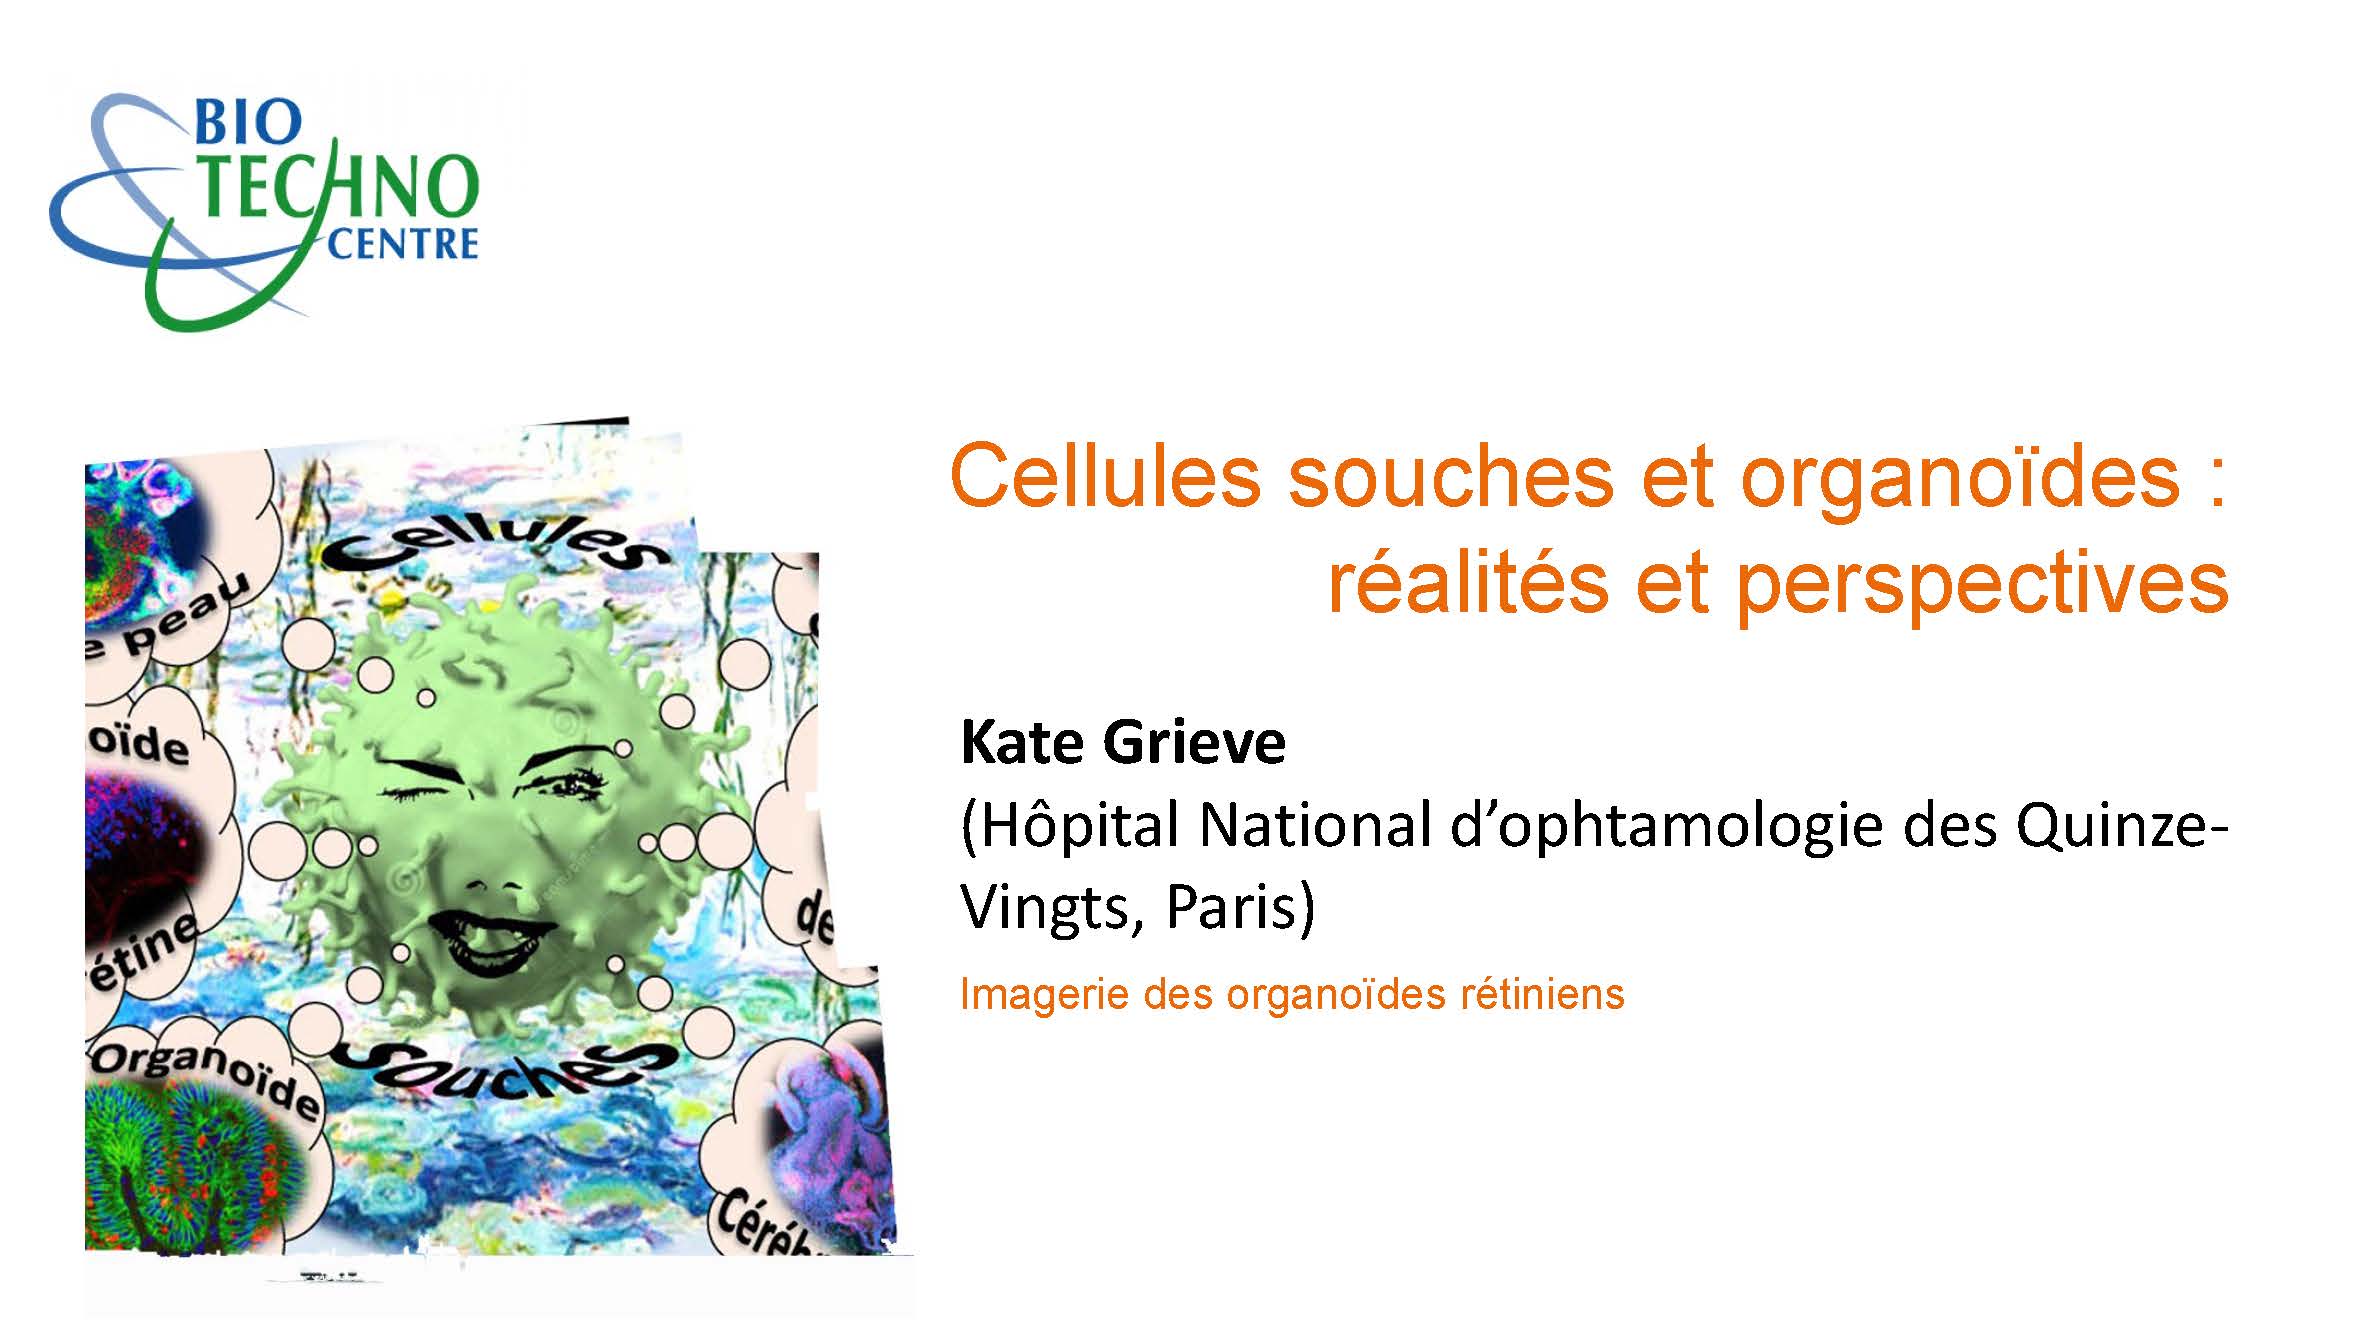 Kate Grieve - Imagerie des organoïdes rétiniens